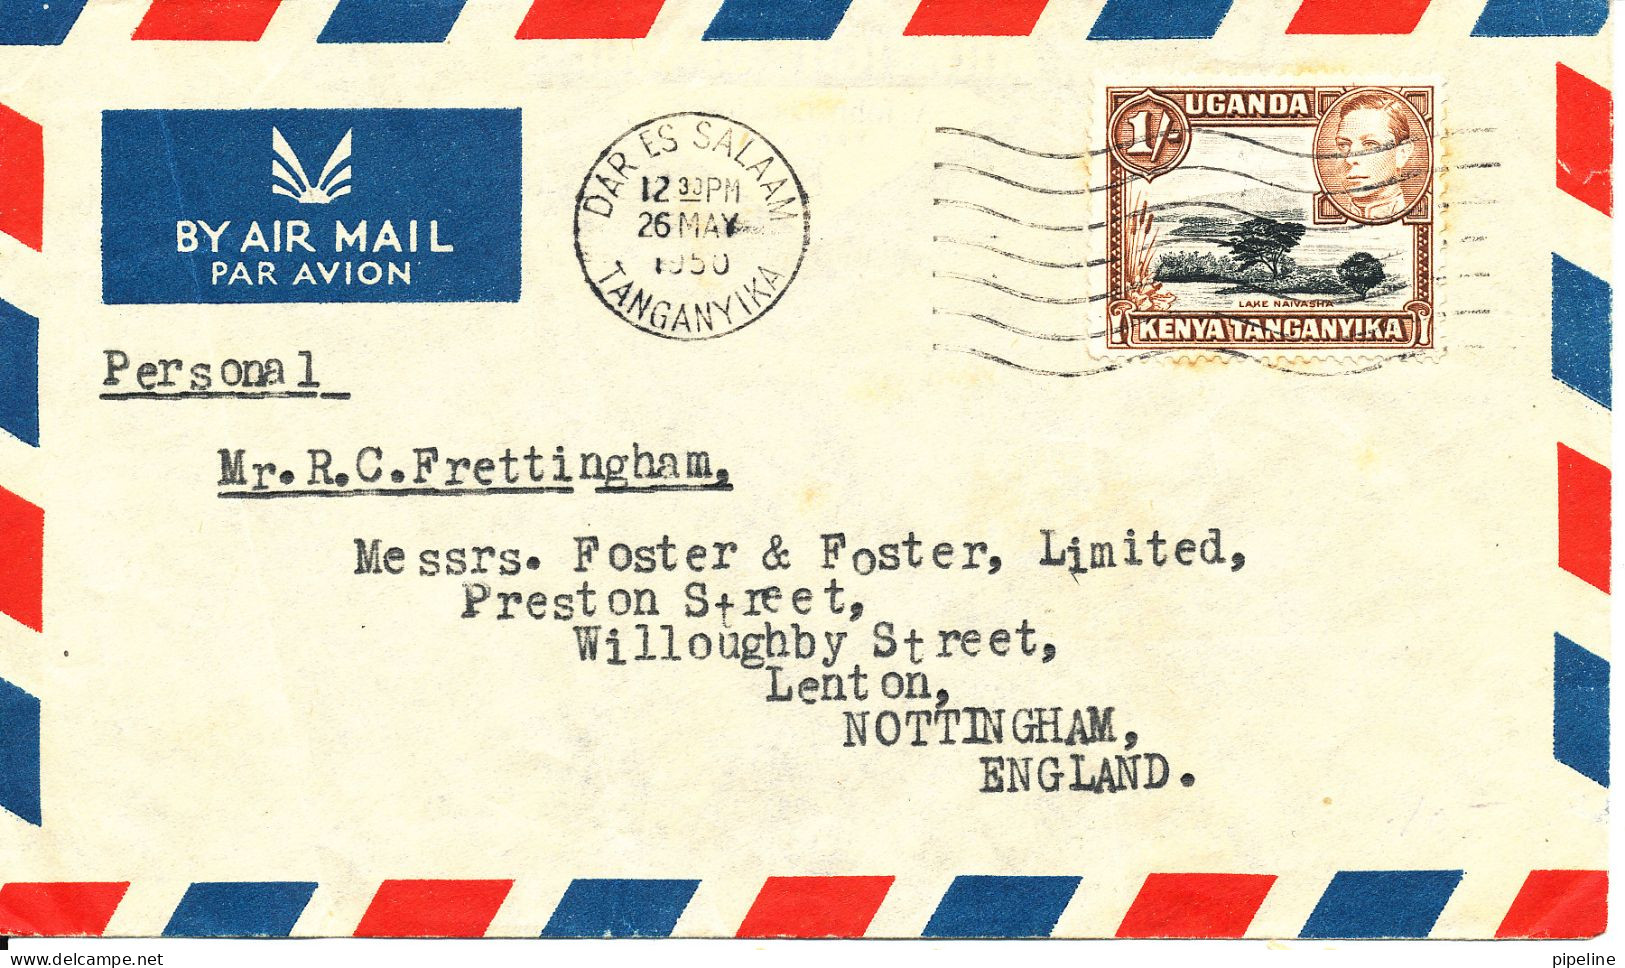 Uganda Kenya Tanganyika Air Mail Cover Sent To England Dar Es Salaam 26-5-1950 The Cover Is Folded - Kenya, Uganda & Tanganyika